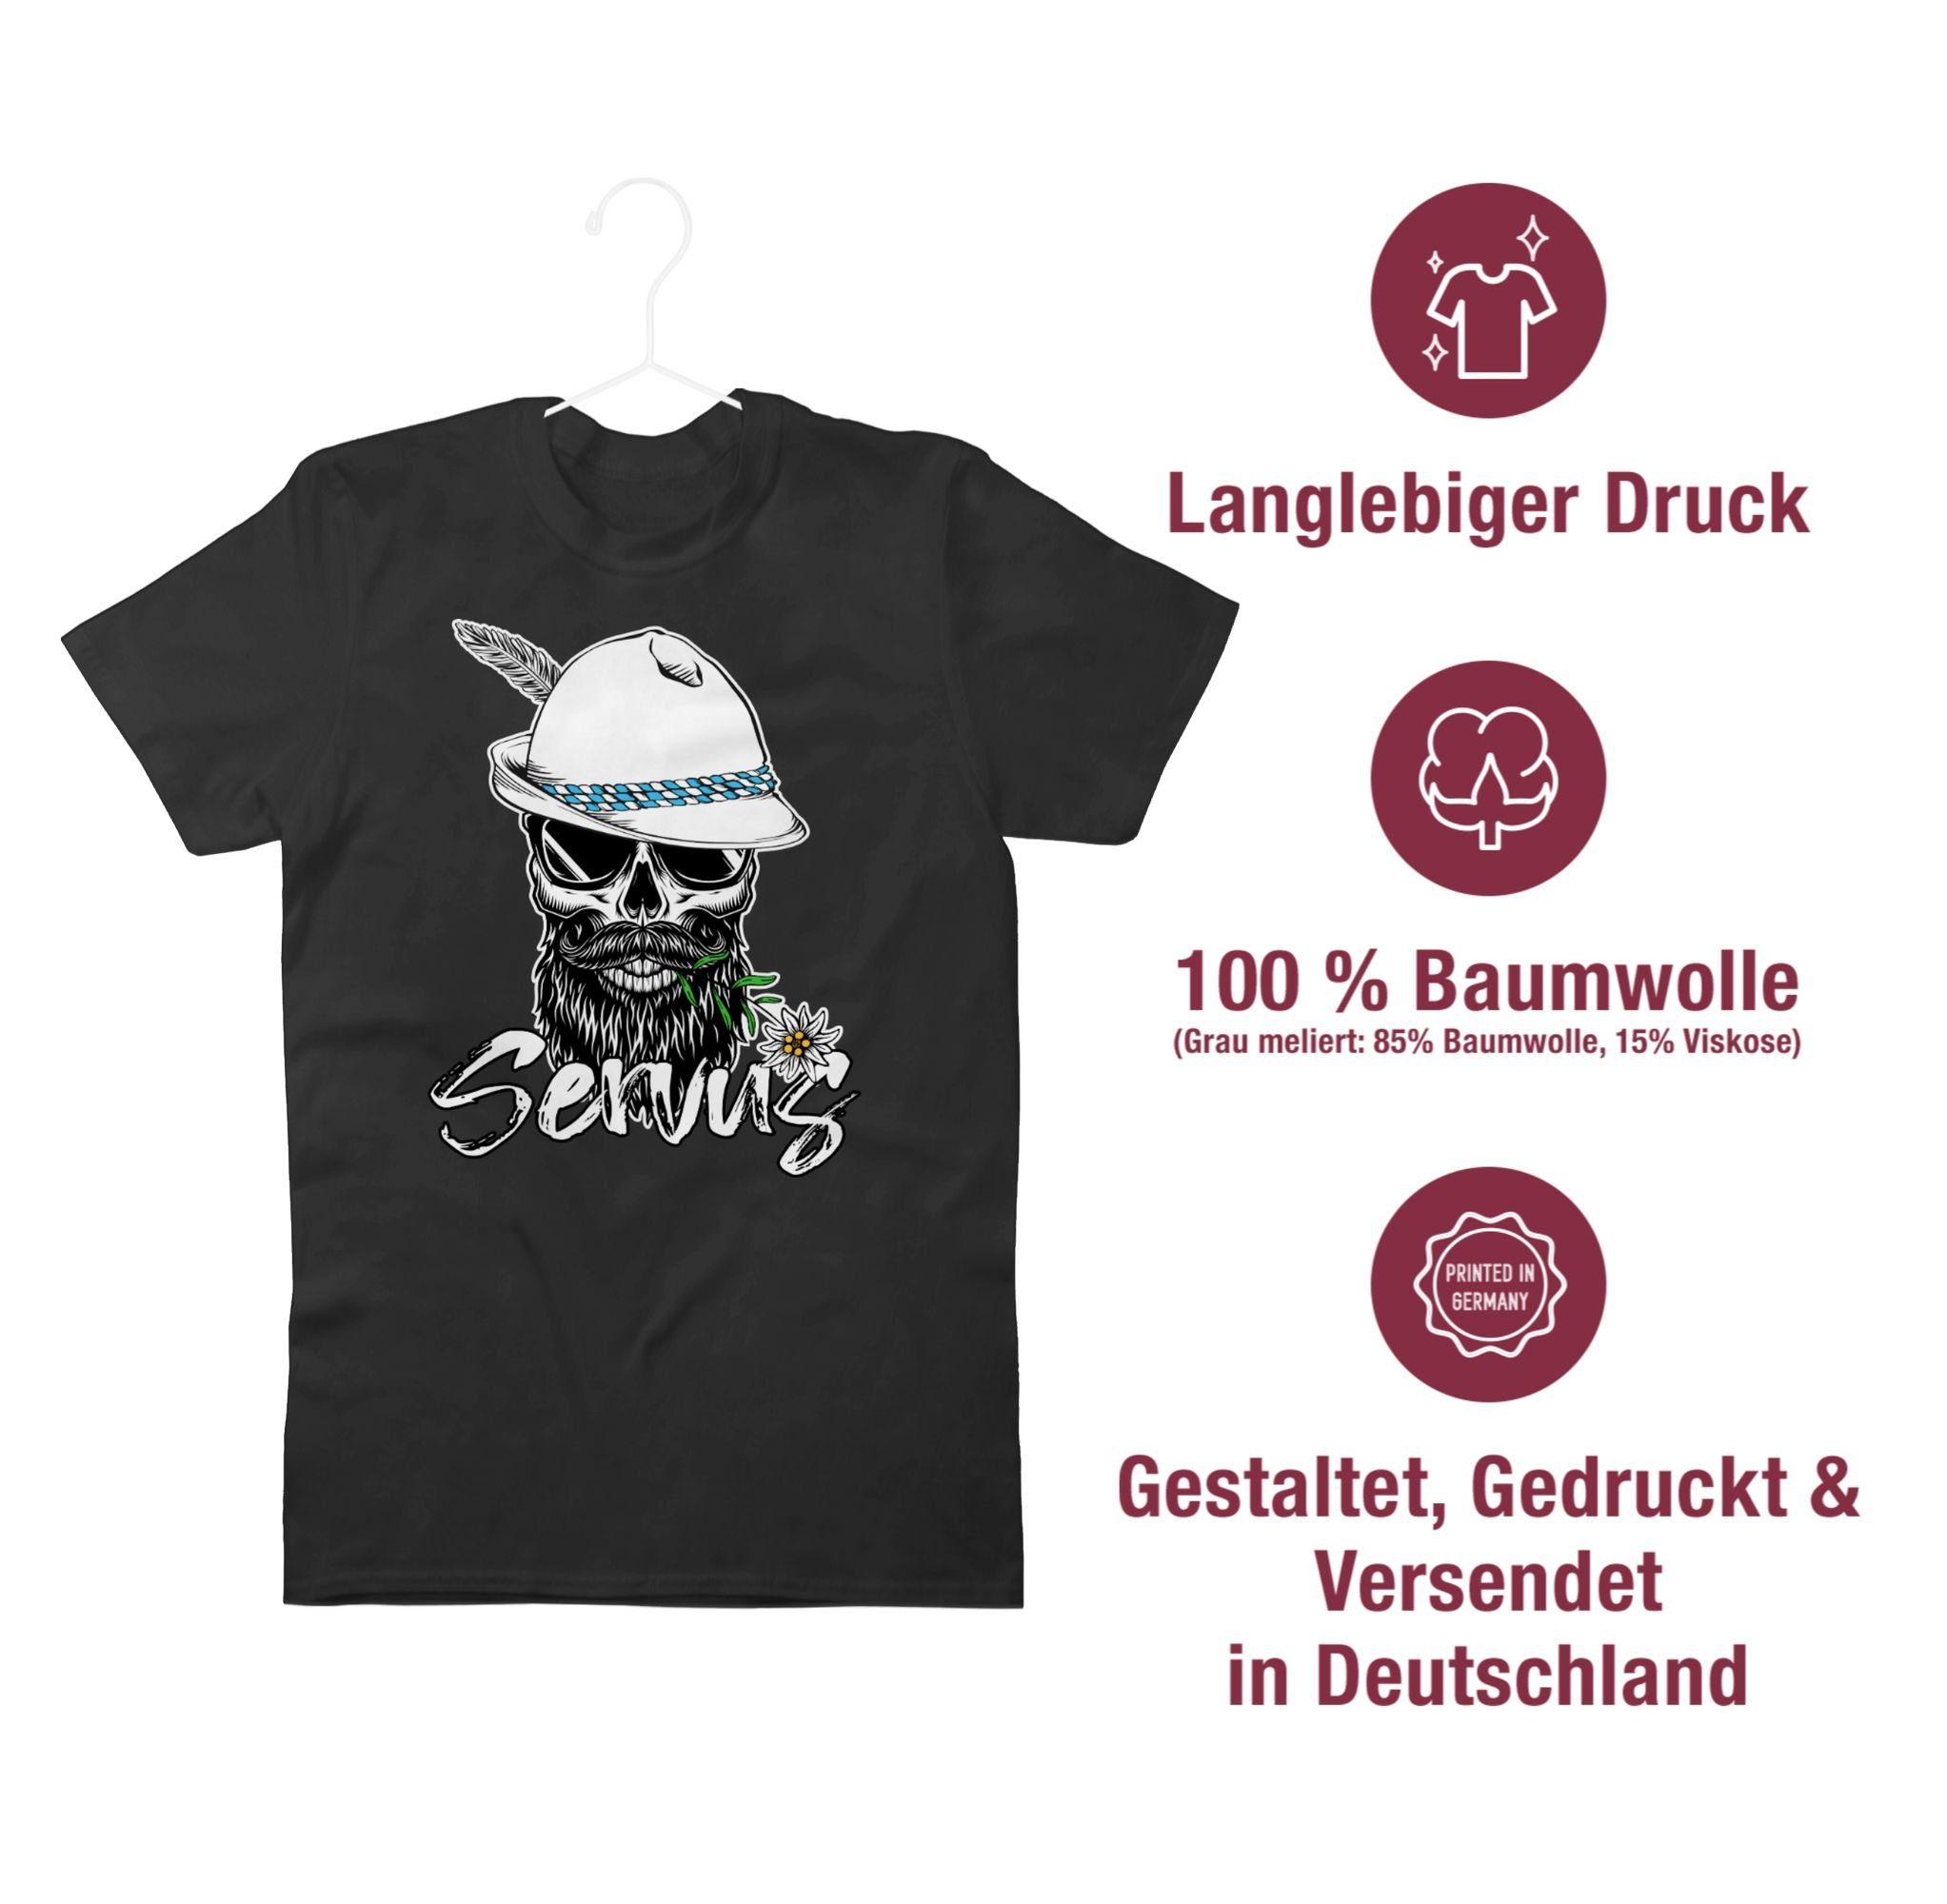 Shirtracer T-Shirt Servus Totenkopf Skull 01 Mode Schwarz Oktoberfest Bayrisch für Herren